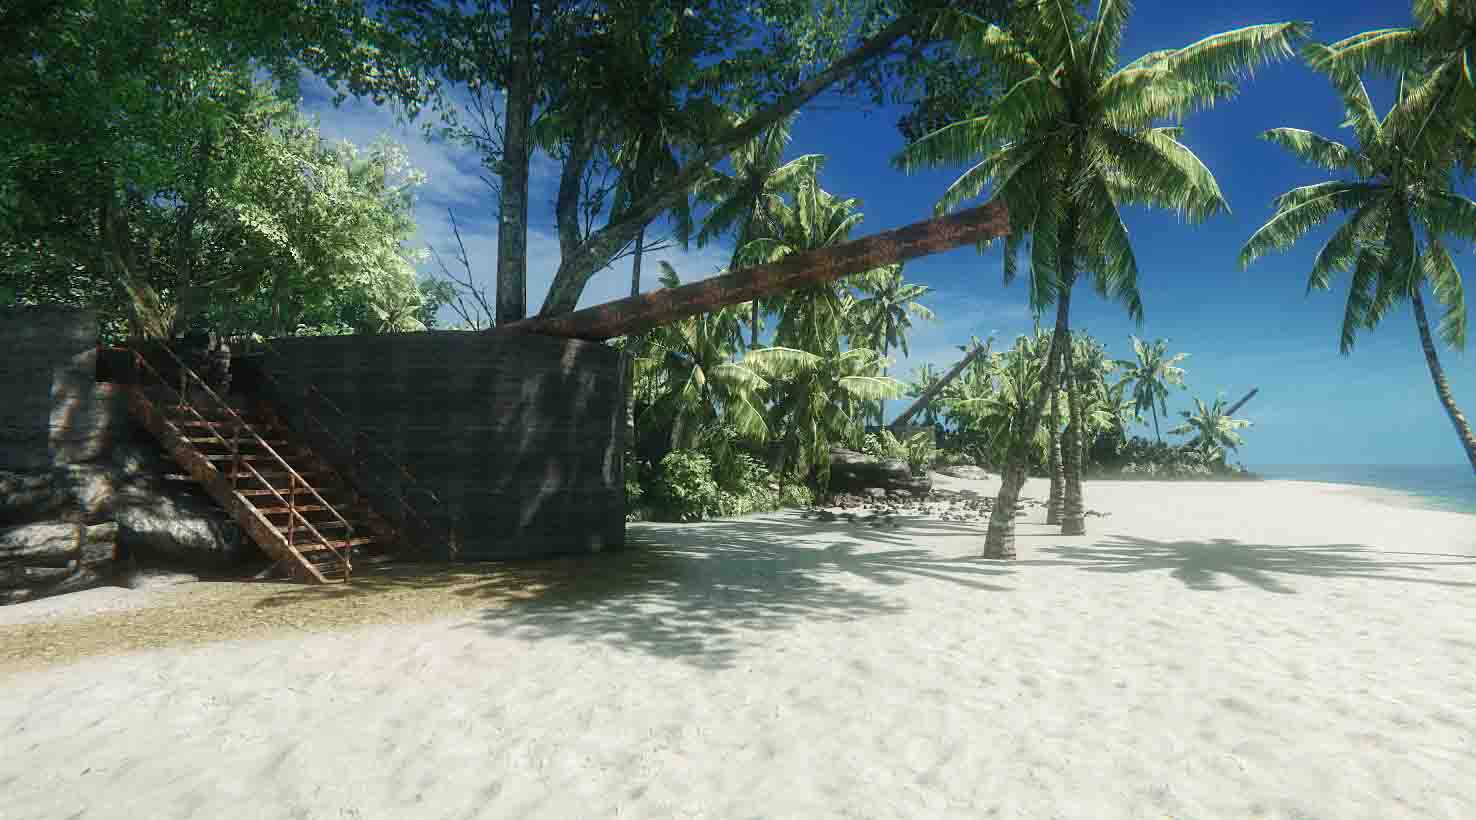 《孤岛惊魂》玩家重制版 画面相较原作有大幅度提升